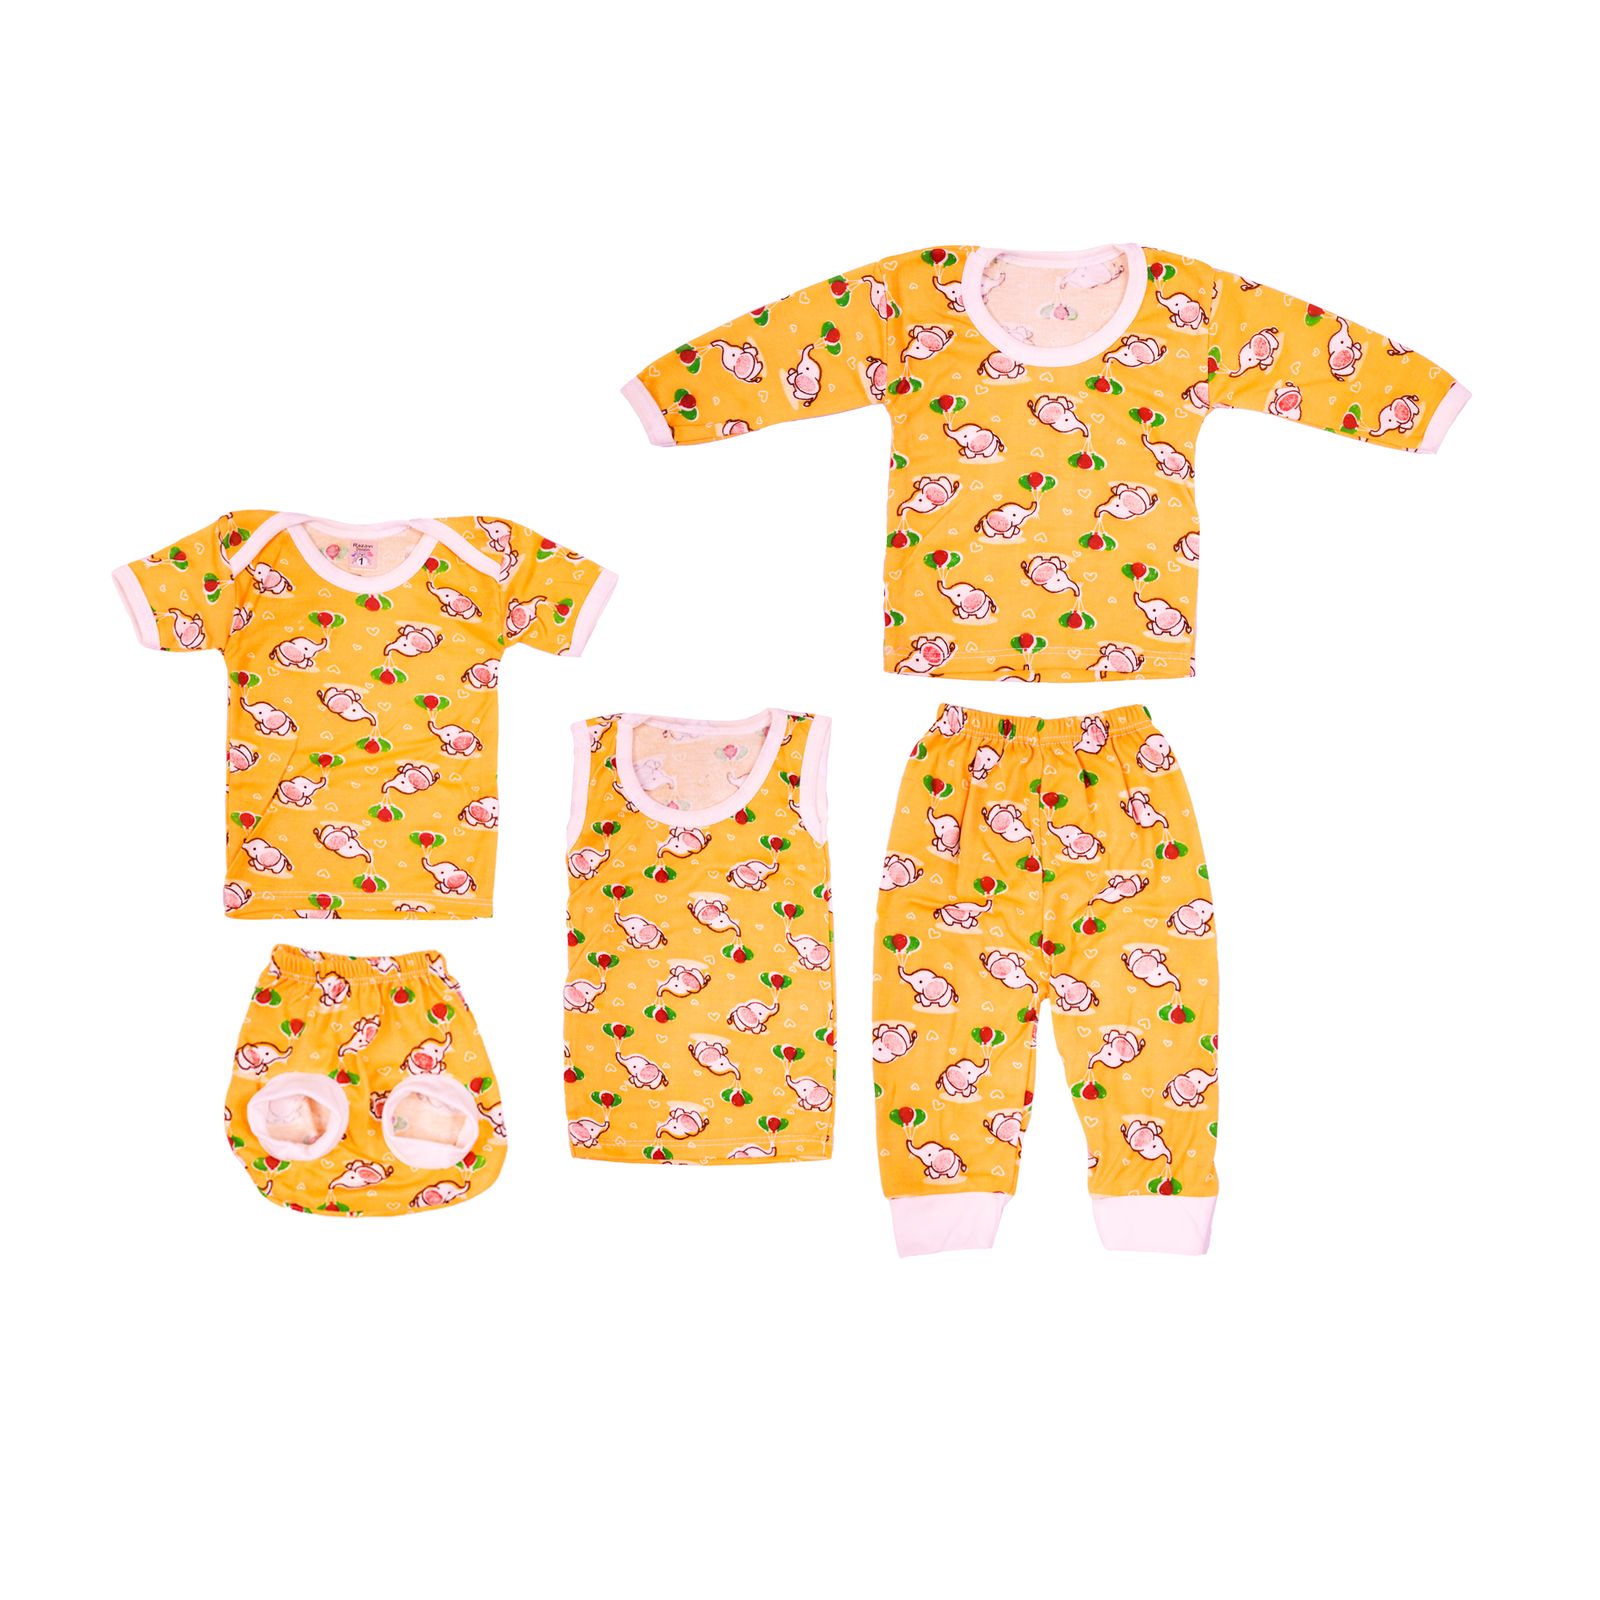 ست 5 تکه لباس نوزادی مدل فیل بادکنکی کد 3 رنگ زرد -  - 1